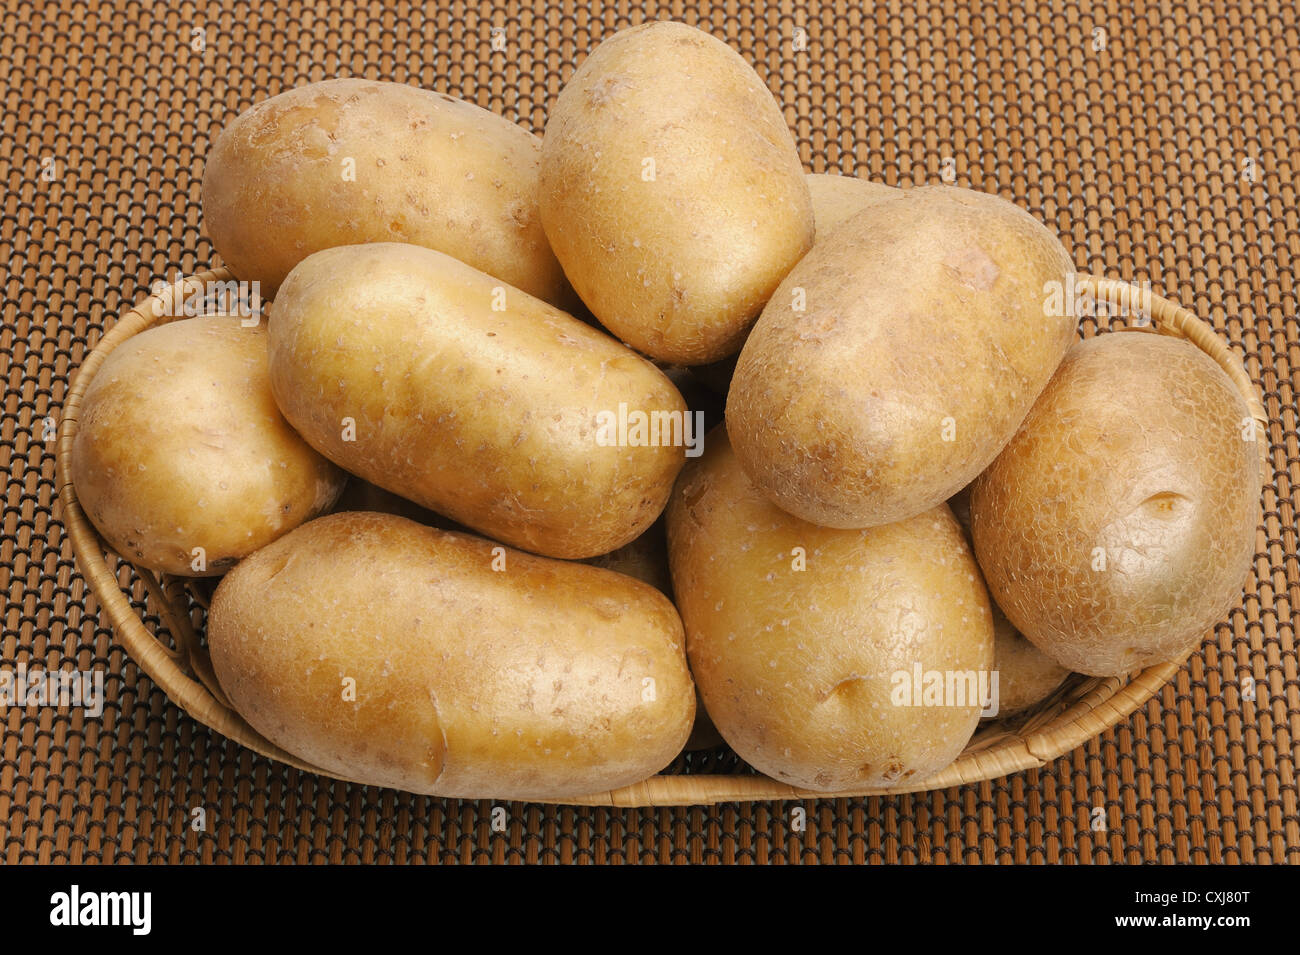 Les pommes de terre sur un tapis Banque D'Images